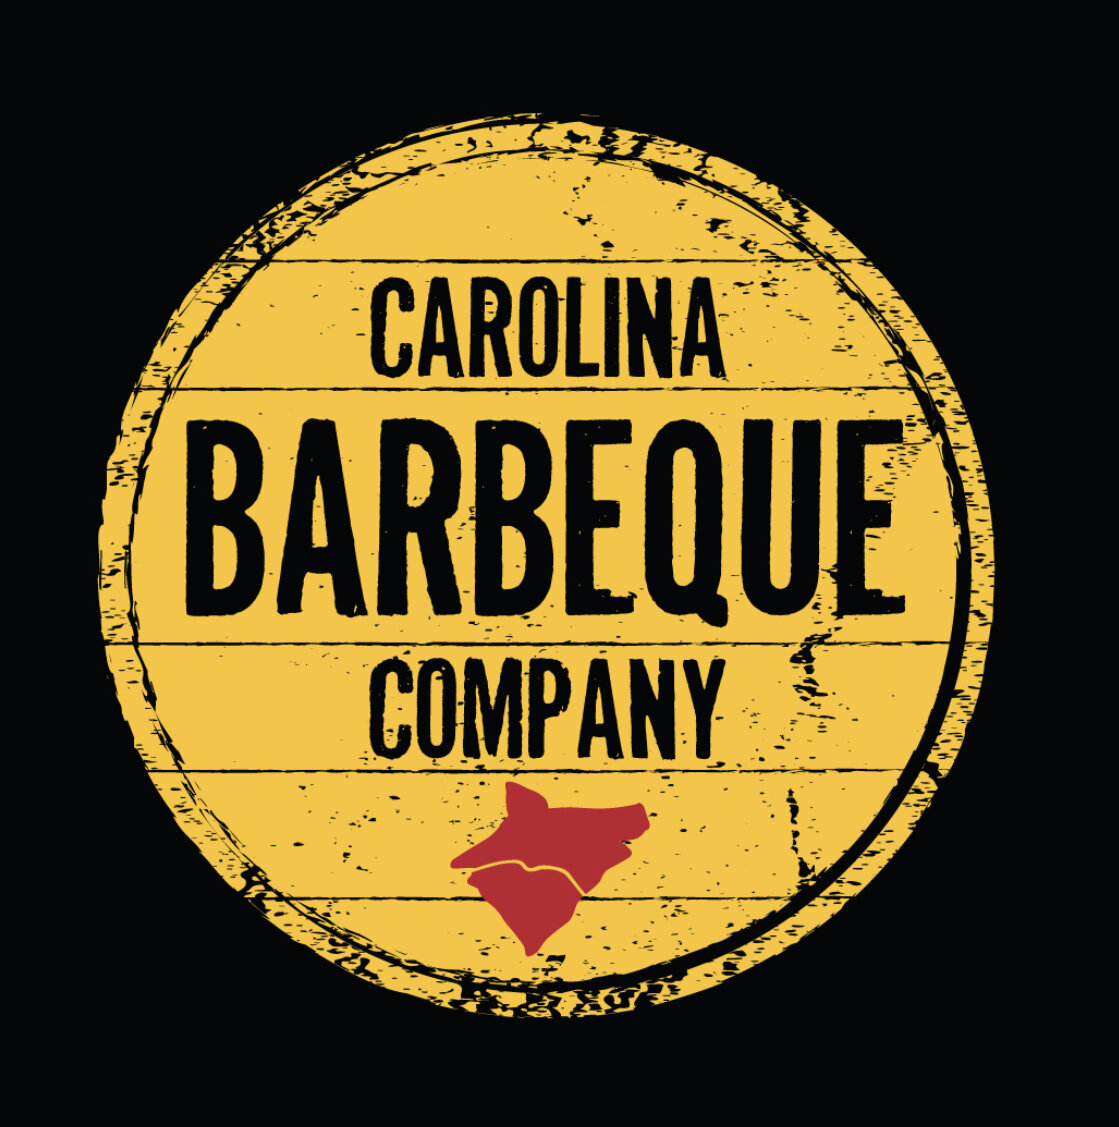 Carolina Barbeque Company 